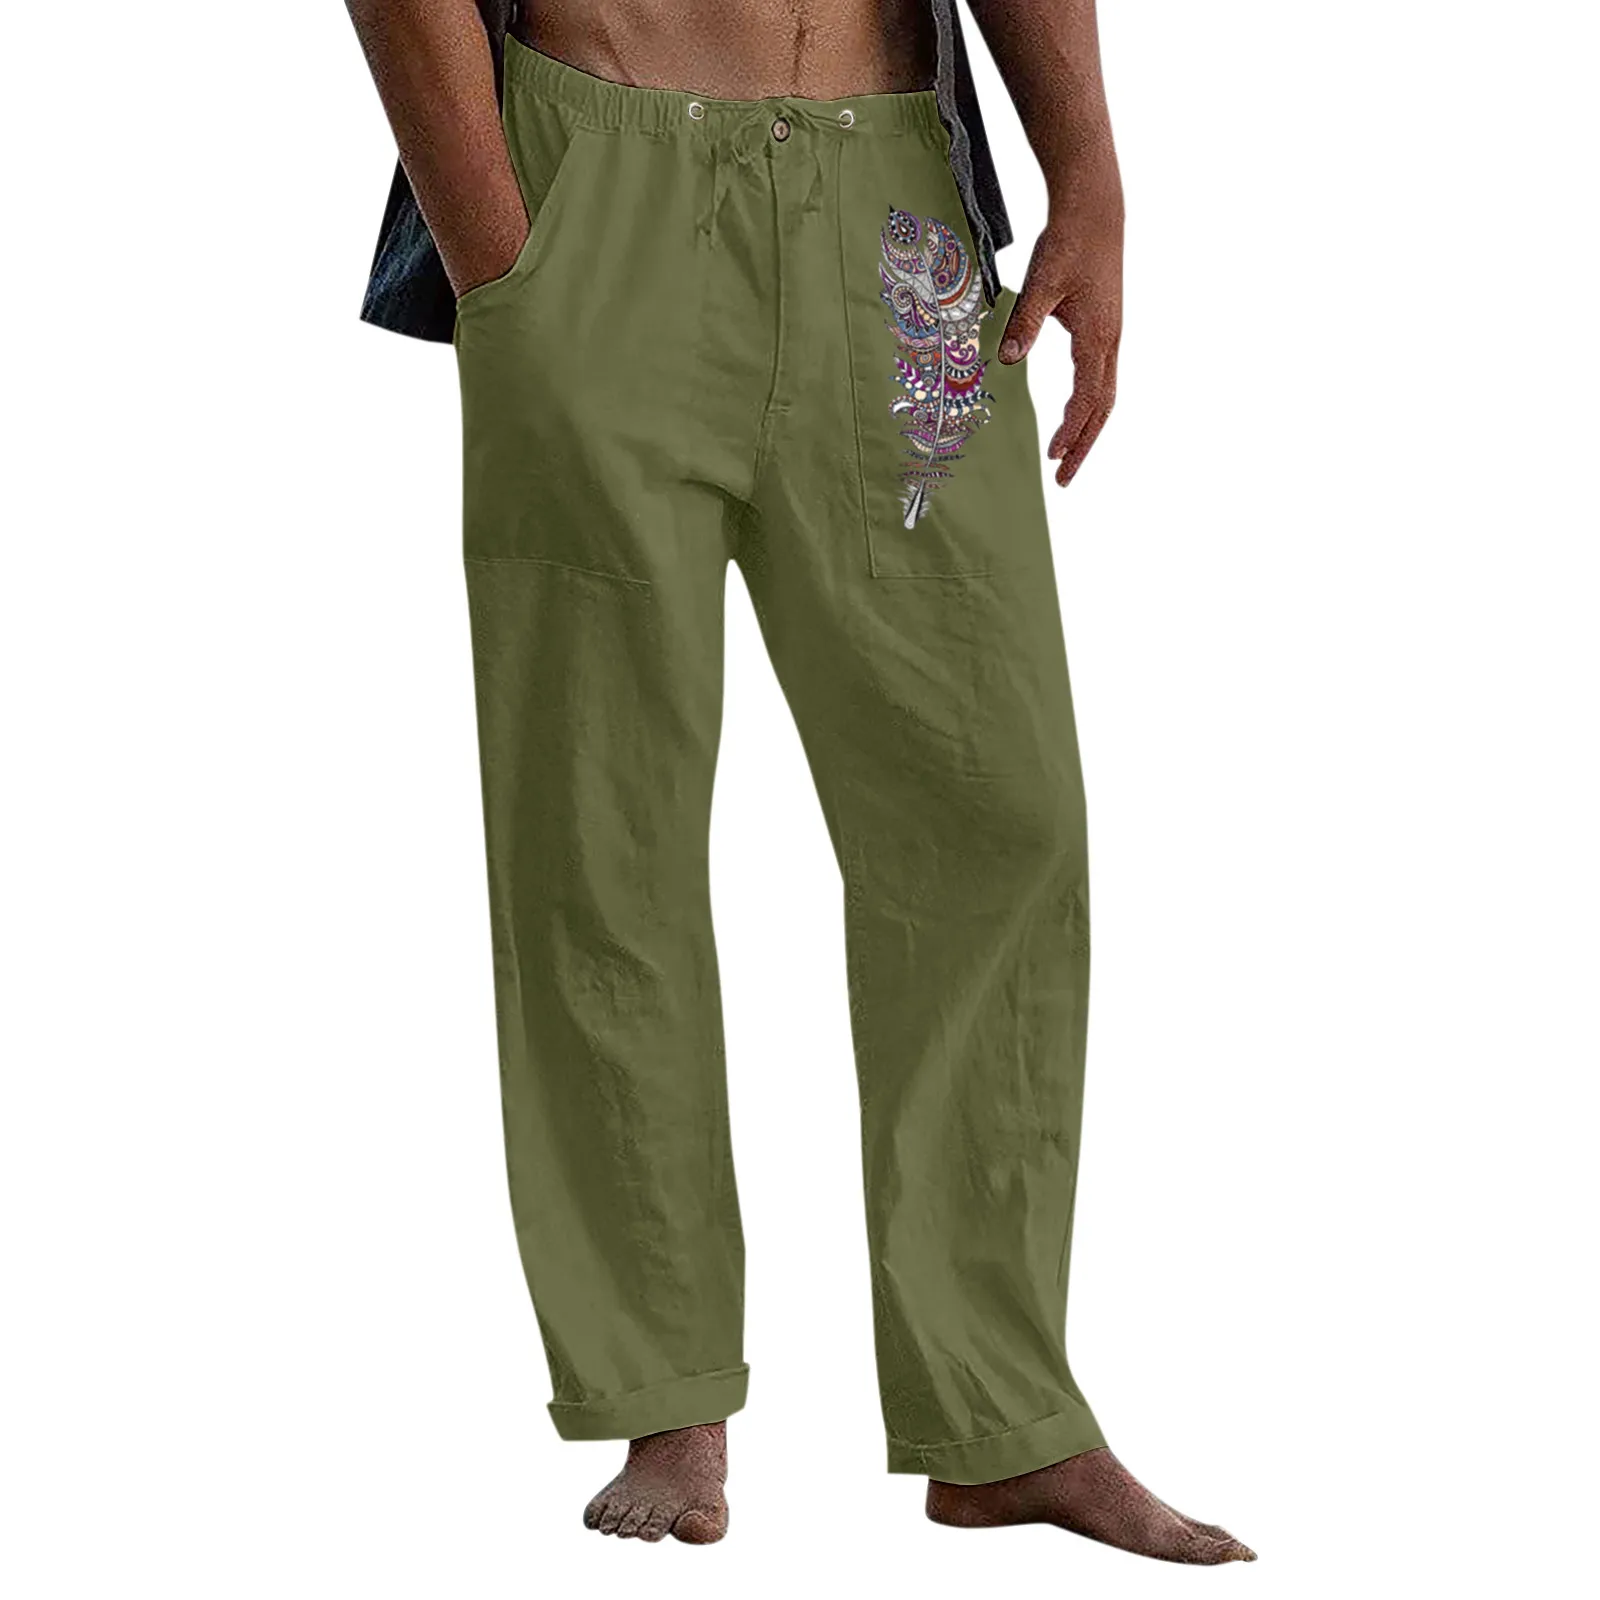 Tanie Eleganckie spodnie codzienne dla mężczyzn ciepłe i dużego ciężaru mężczyzna sklep